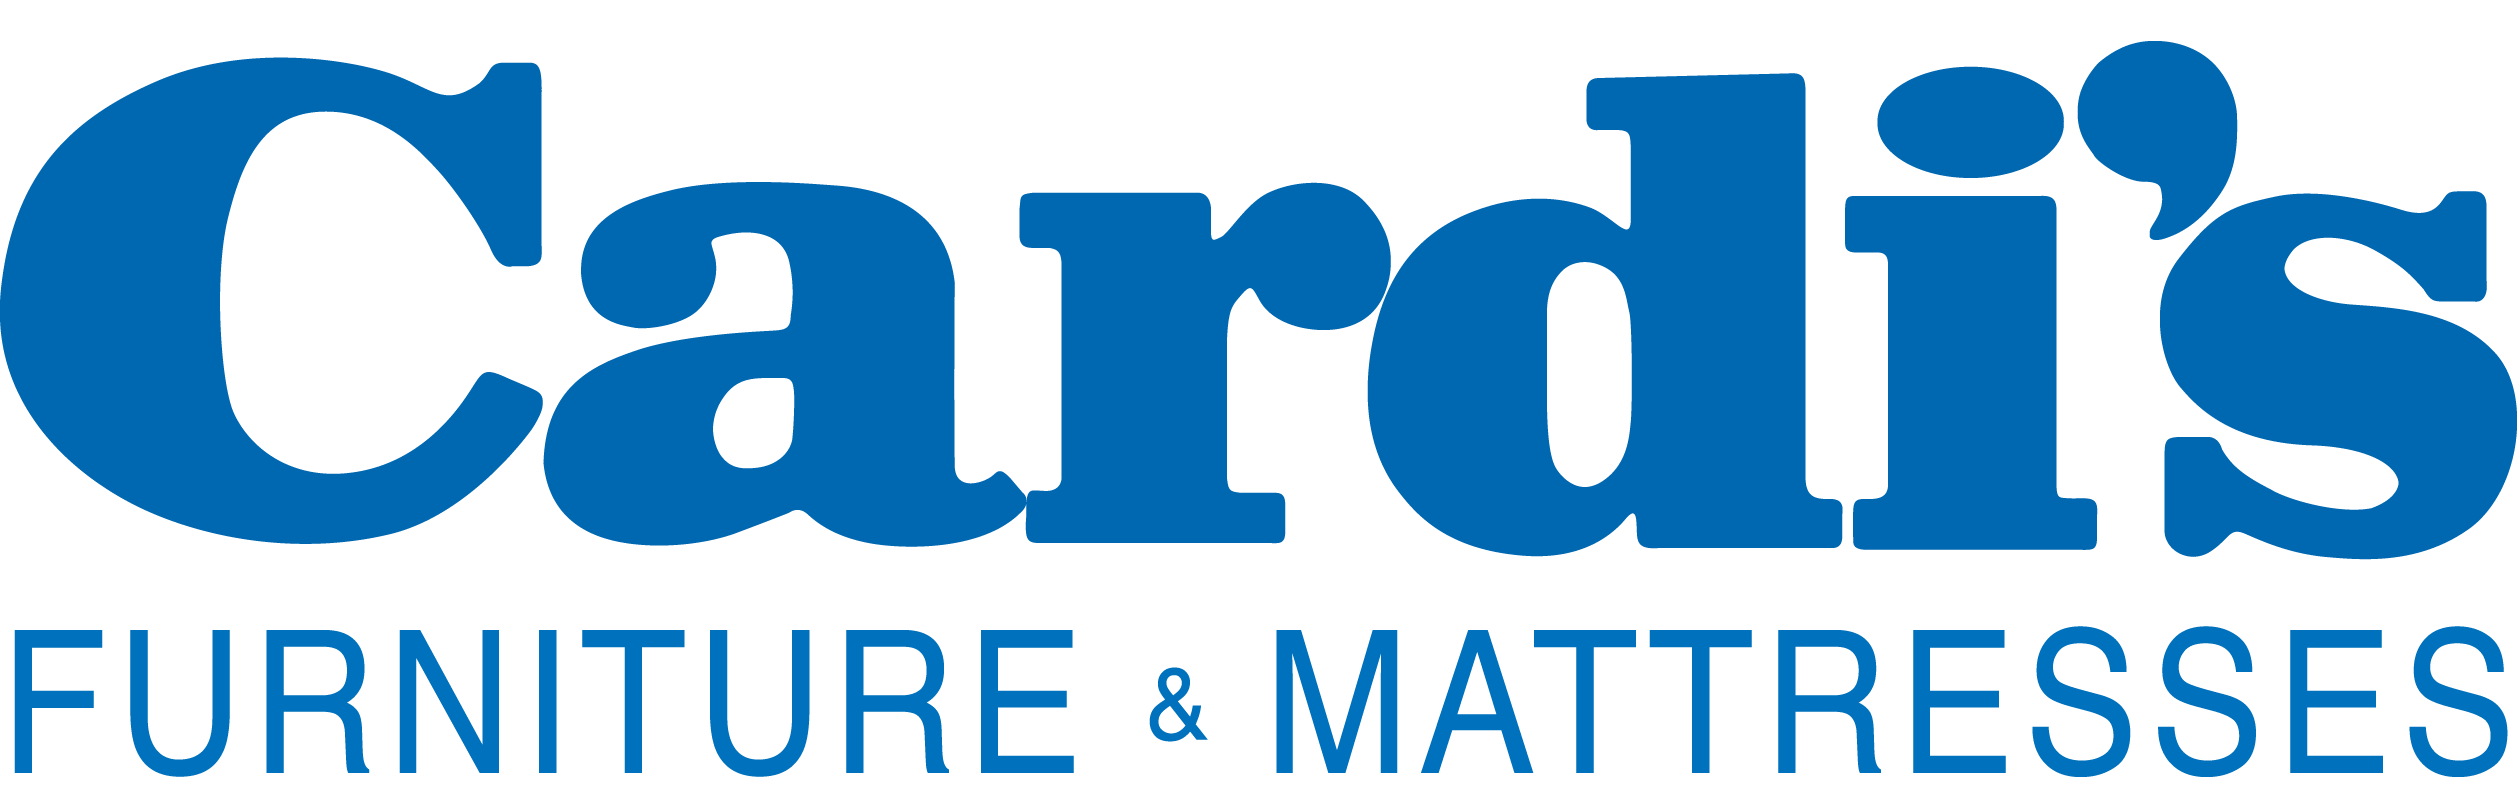 Cardis_Logo.png